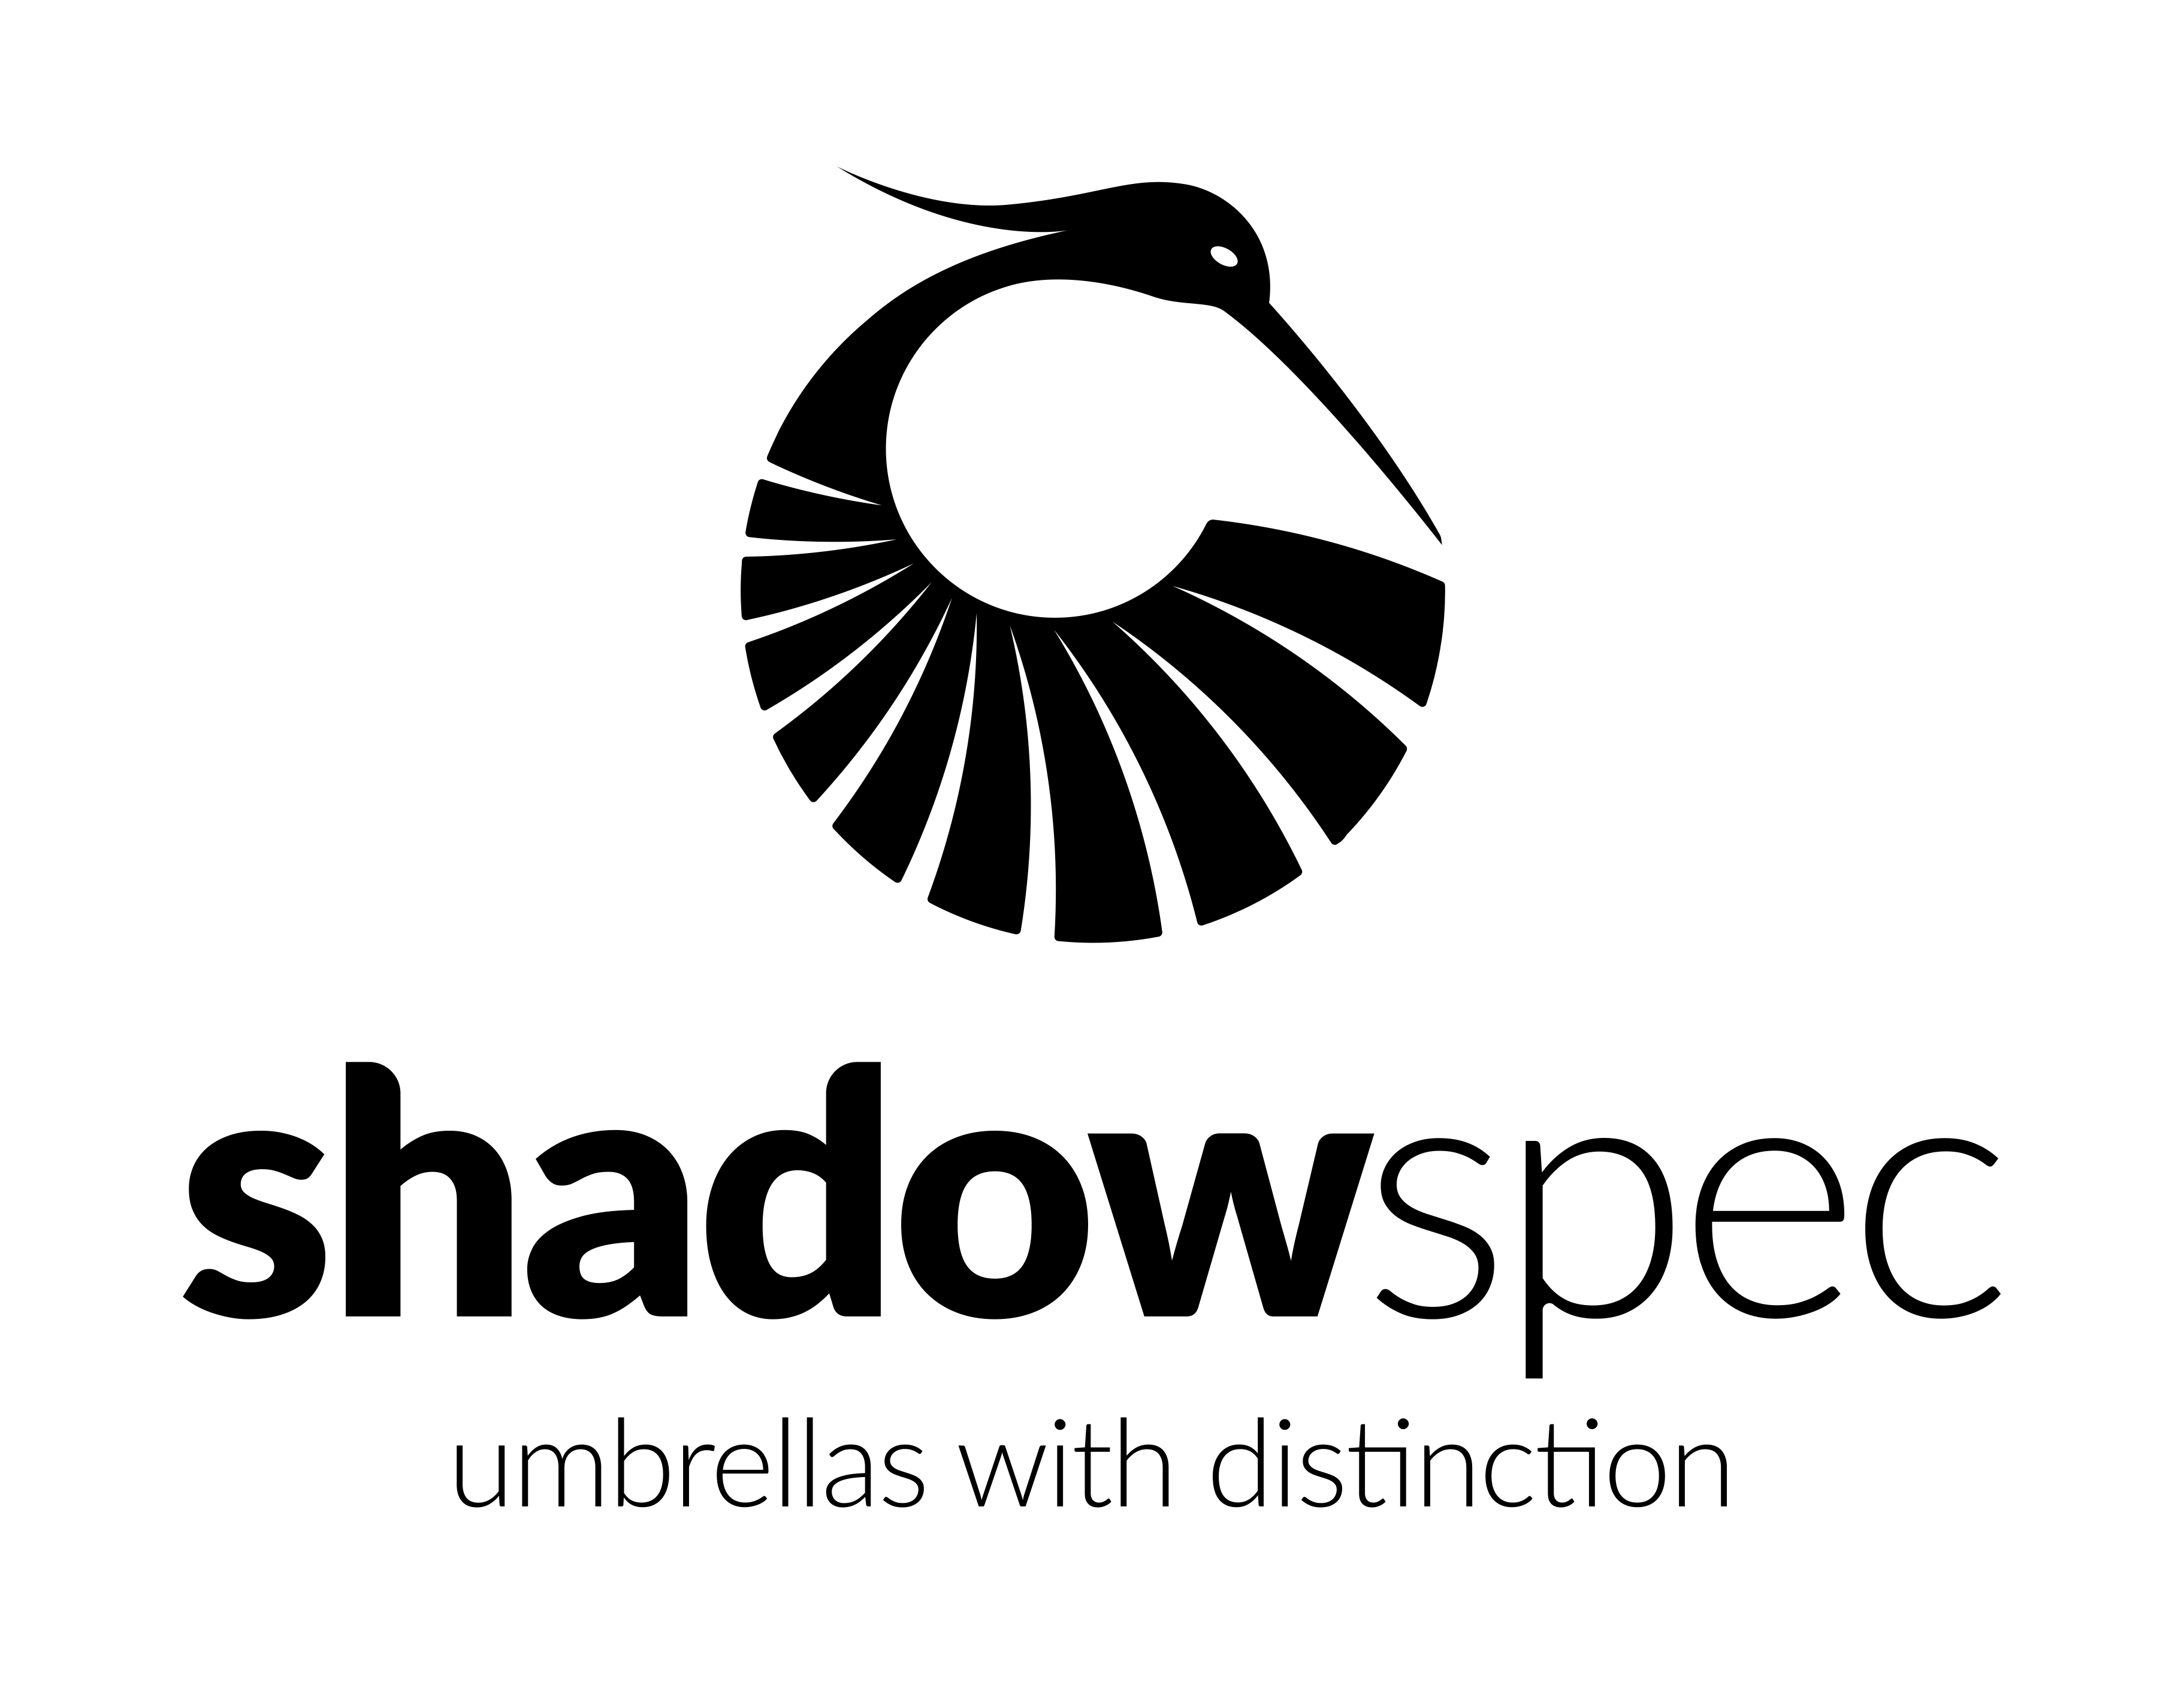 Shadowspec Umbrellas